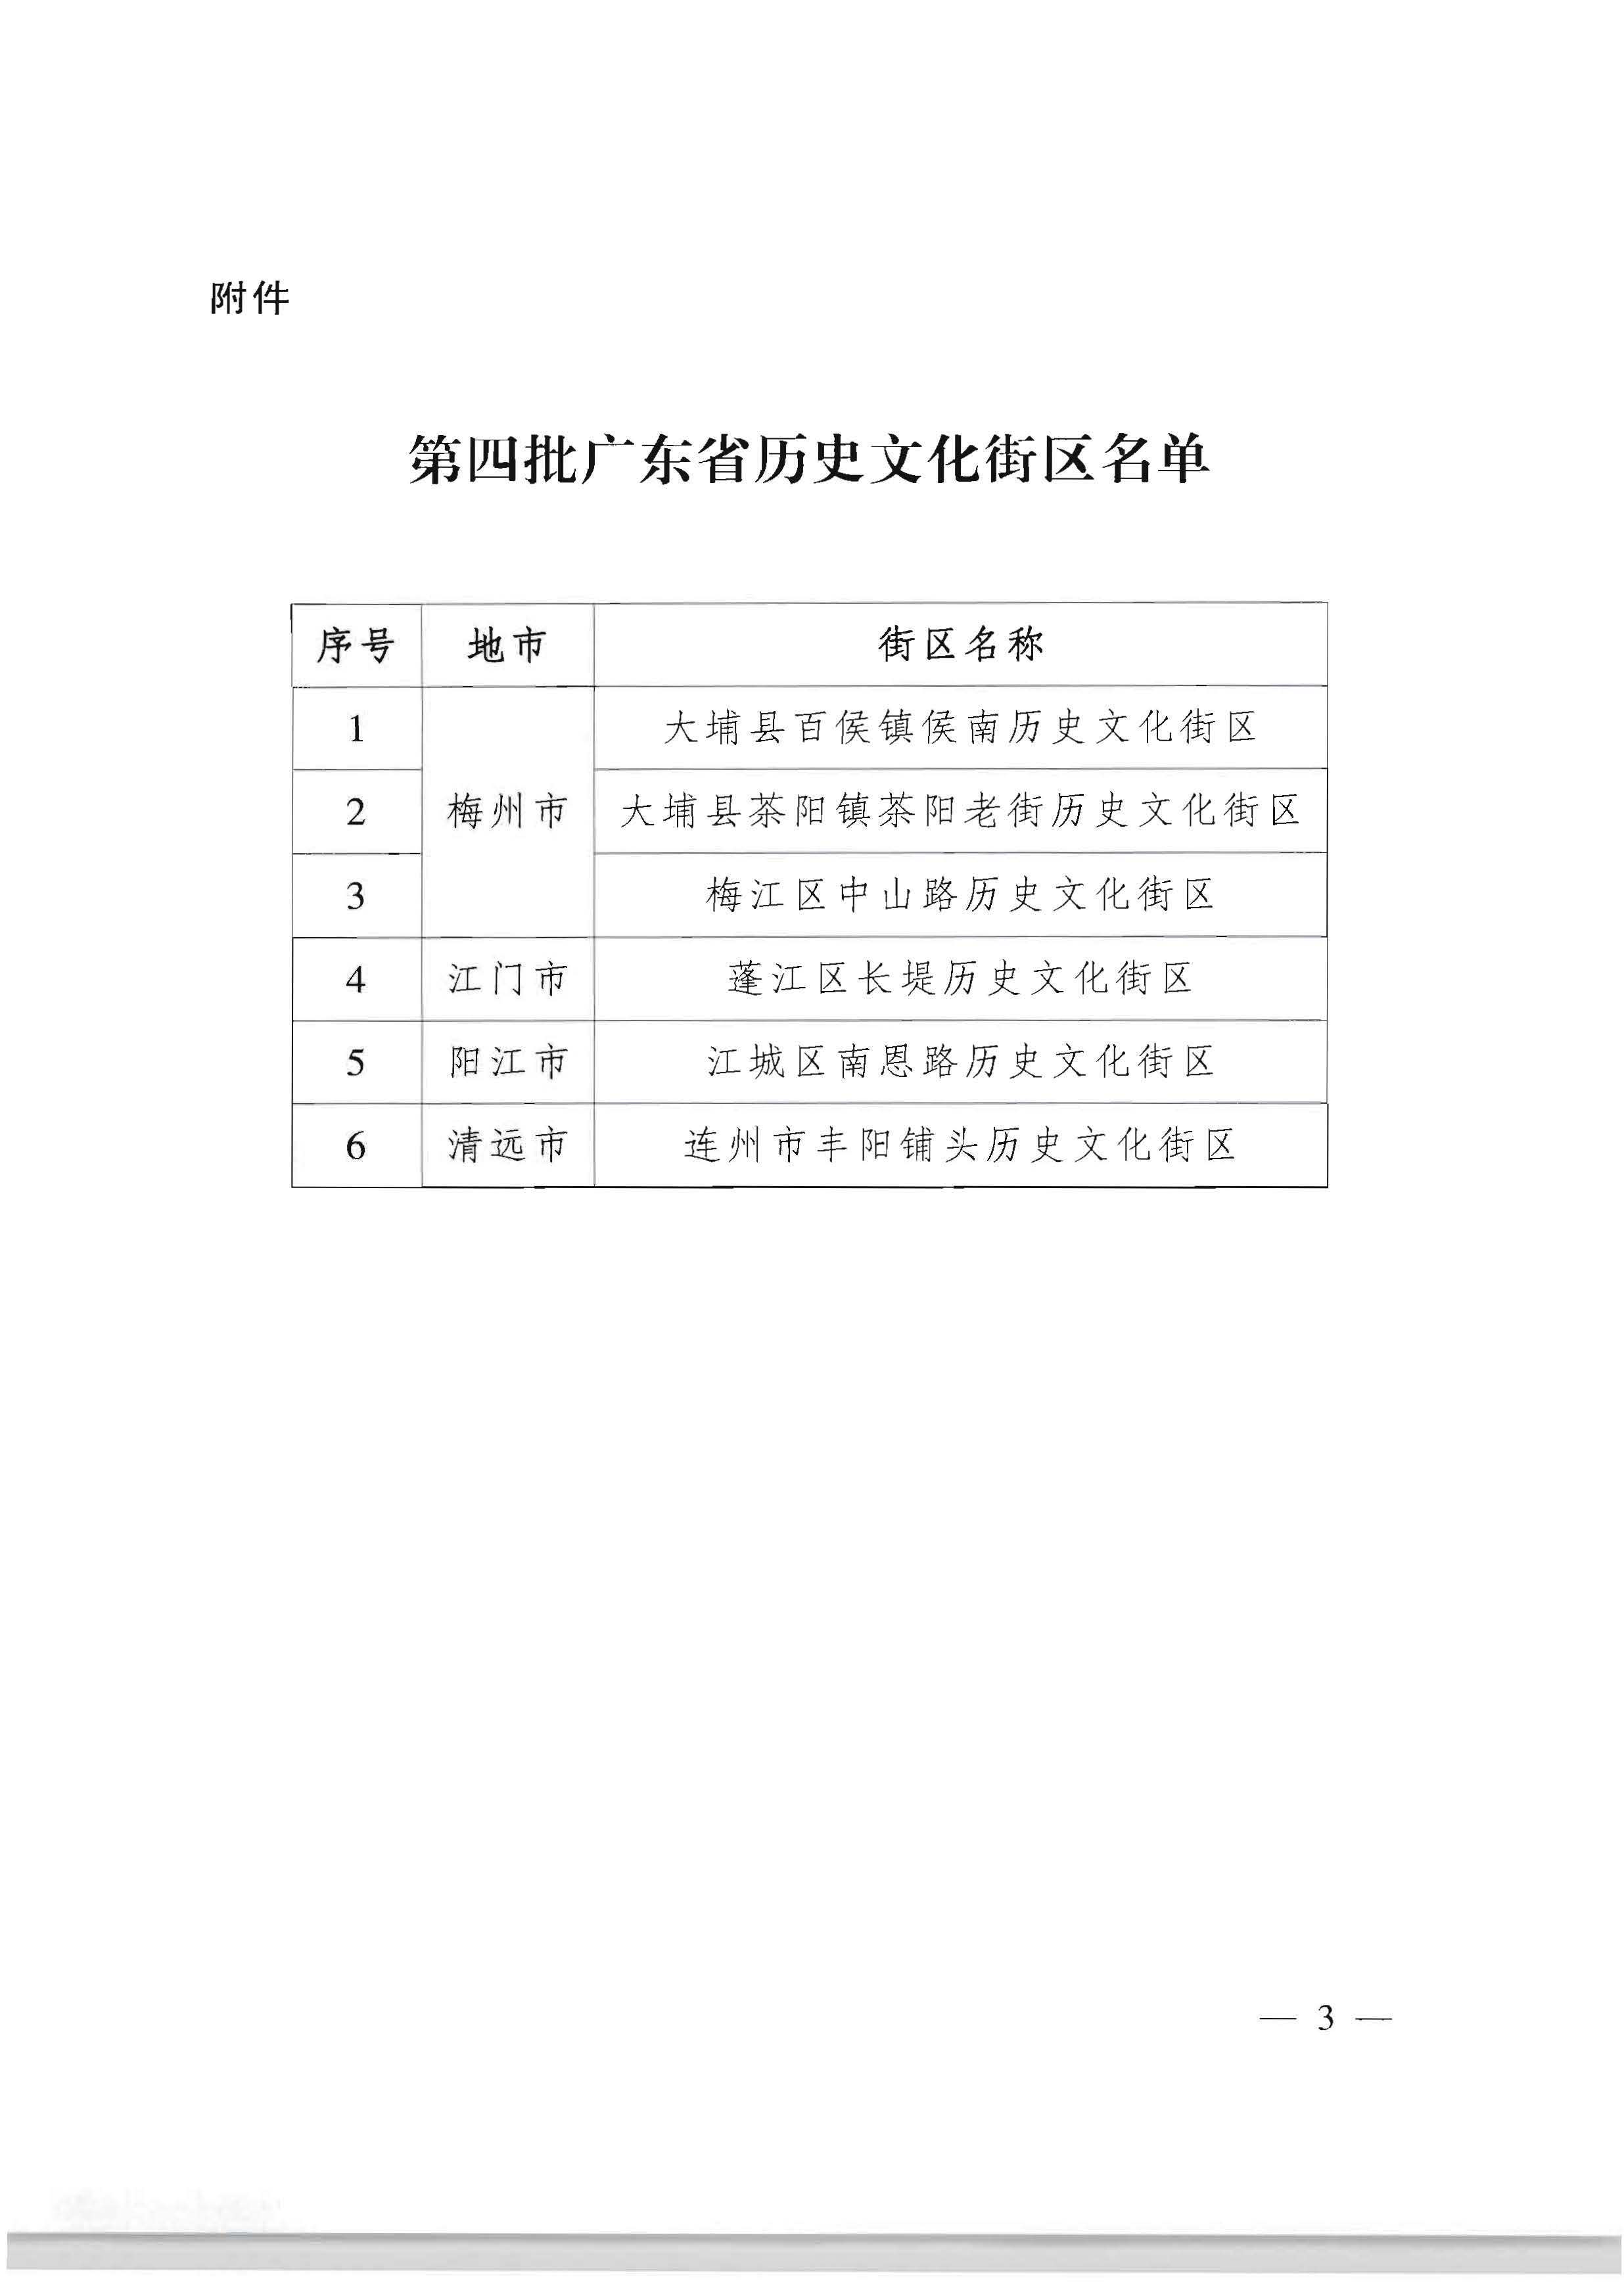 广东省人民政府关于公布第四批广东省历史文化街区名单的通知_页面_4_页面_3.jpg